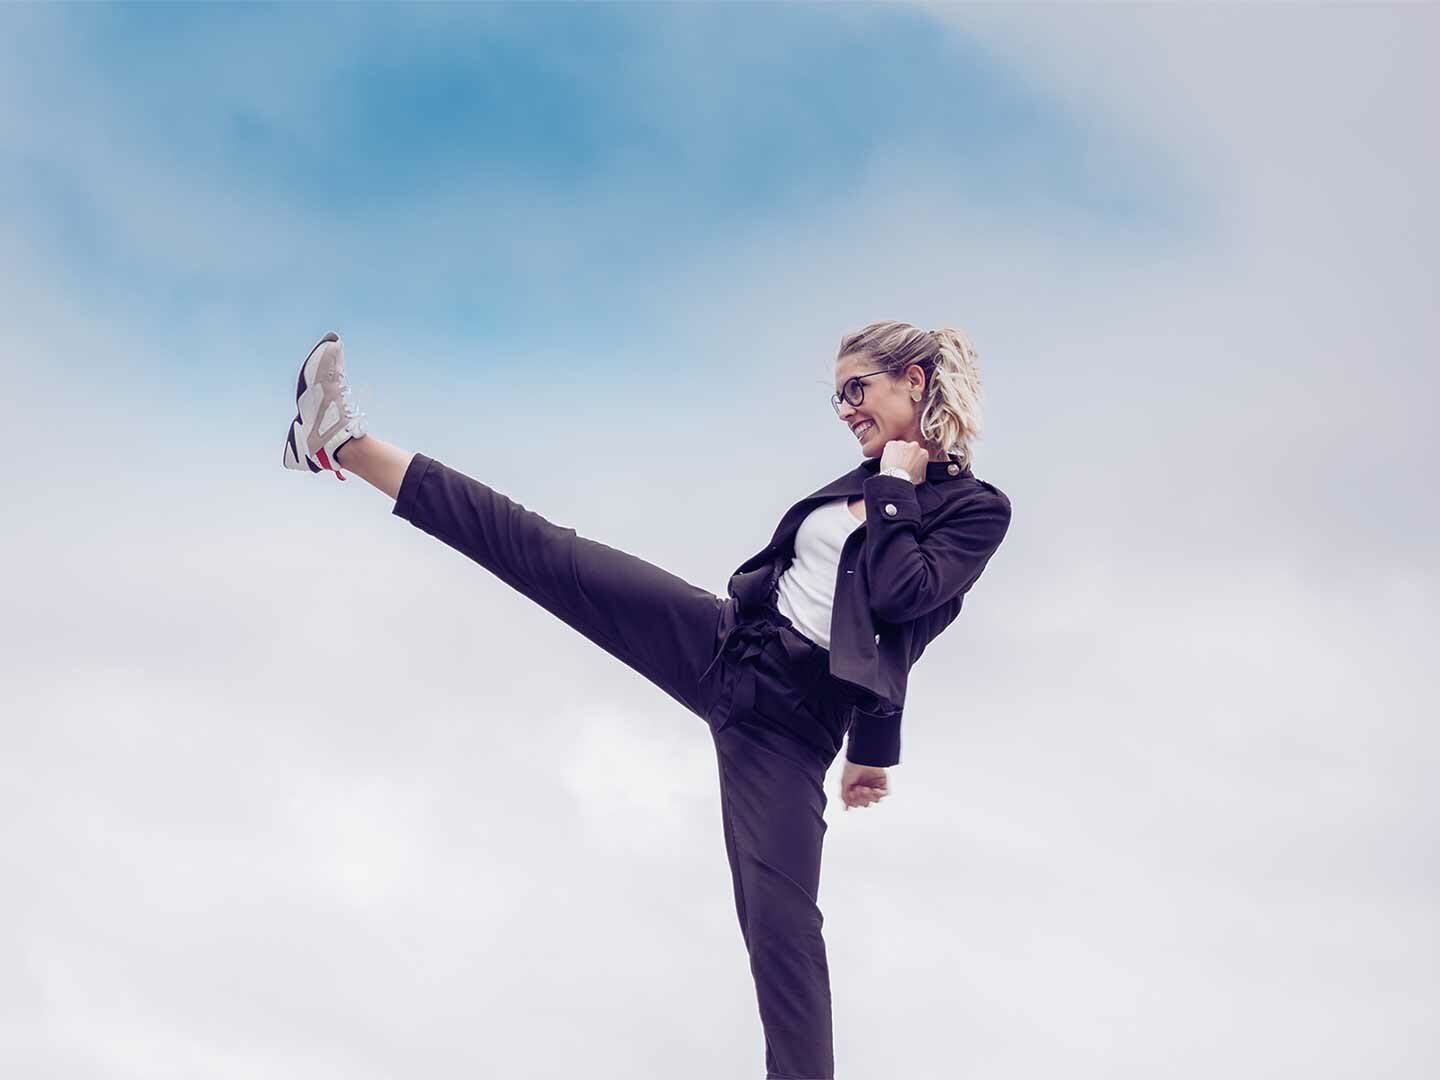 Eine Frau in Businesskleidung, die in die Luft tritt, um weibliche Stärke und den Weltfrauentag zu symbolisieren